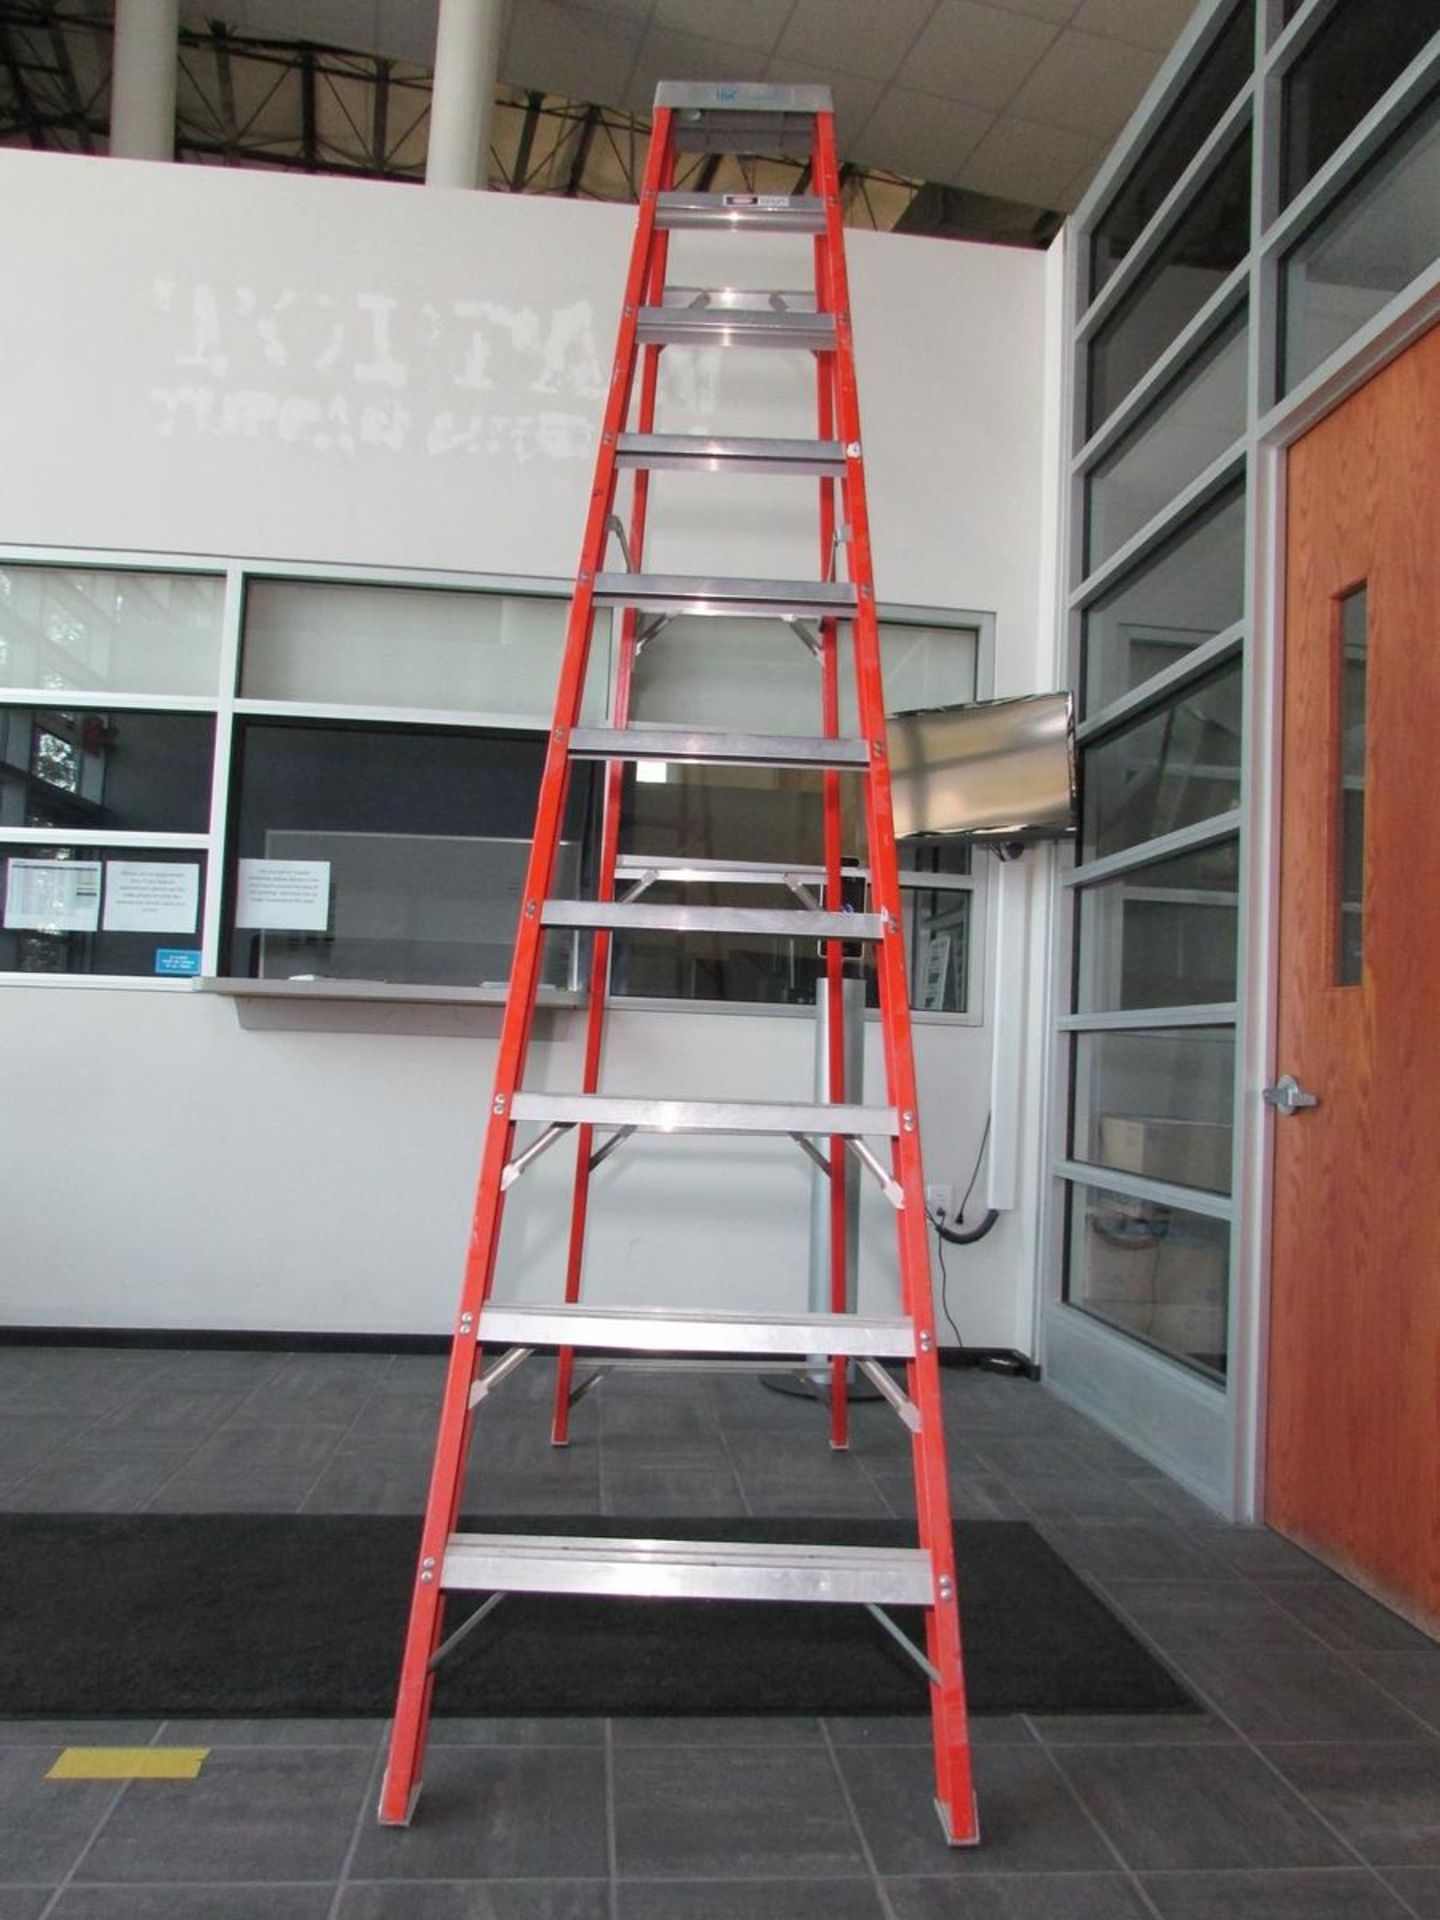 Louisville 10' Fiberglass A-Frame Ladder - Image 2 of 2